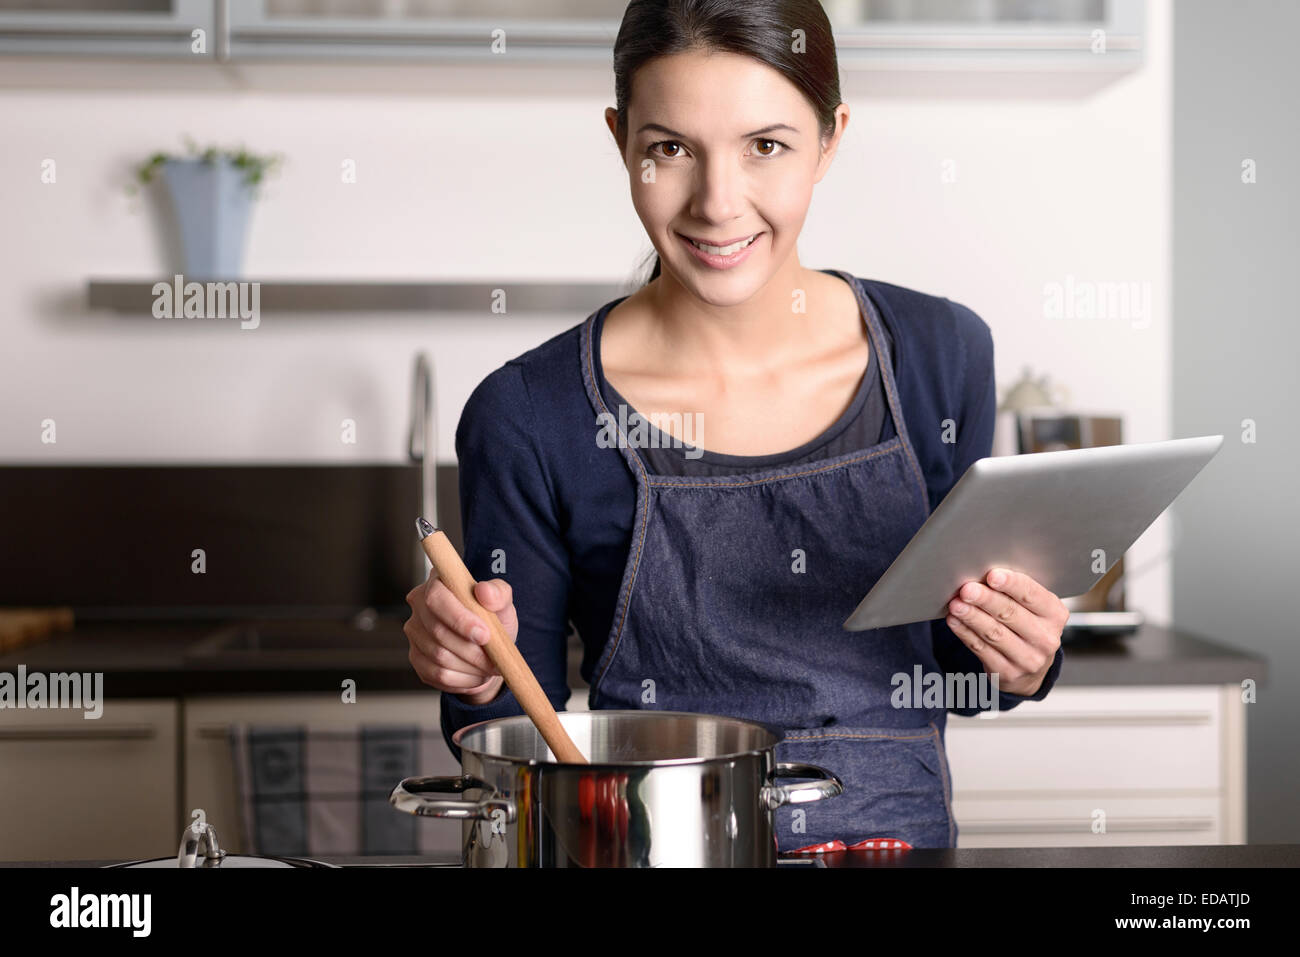 Junge Frau, die ein Rezept auf ihrem Tablet betrachten, während sie in der Küche vor einem Topf auf dem Herd steht Stockfoto